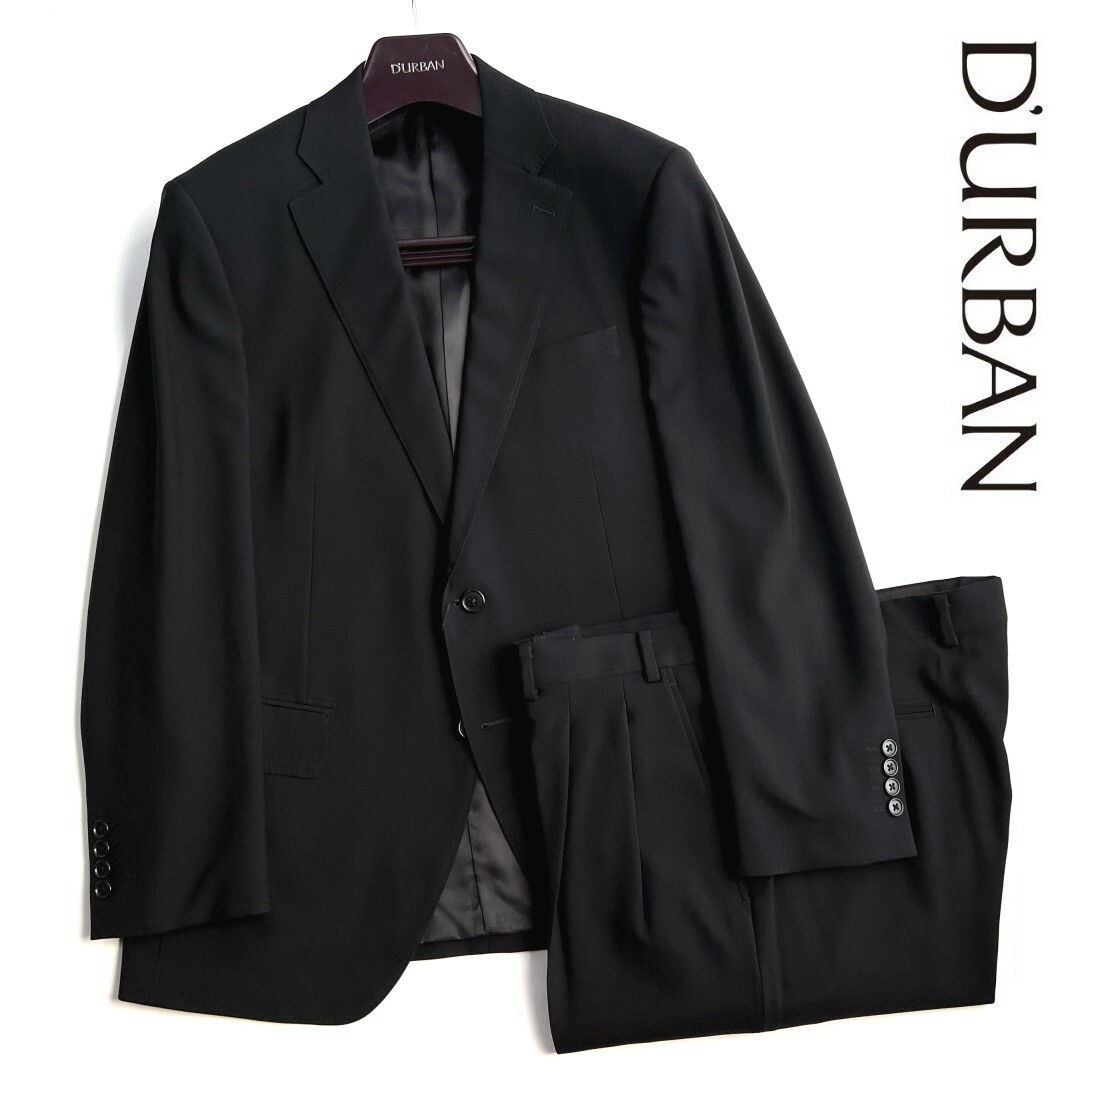 人気SALE最新作D282A4 新品 定価9.8万 日本製 DURBAN ダーバン 春夏 背抜き ウール100% ノータック コードストライプ柄スーツ ブラック A4 Sサイズ以下